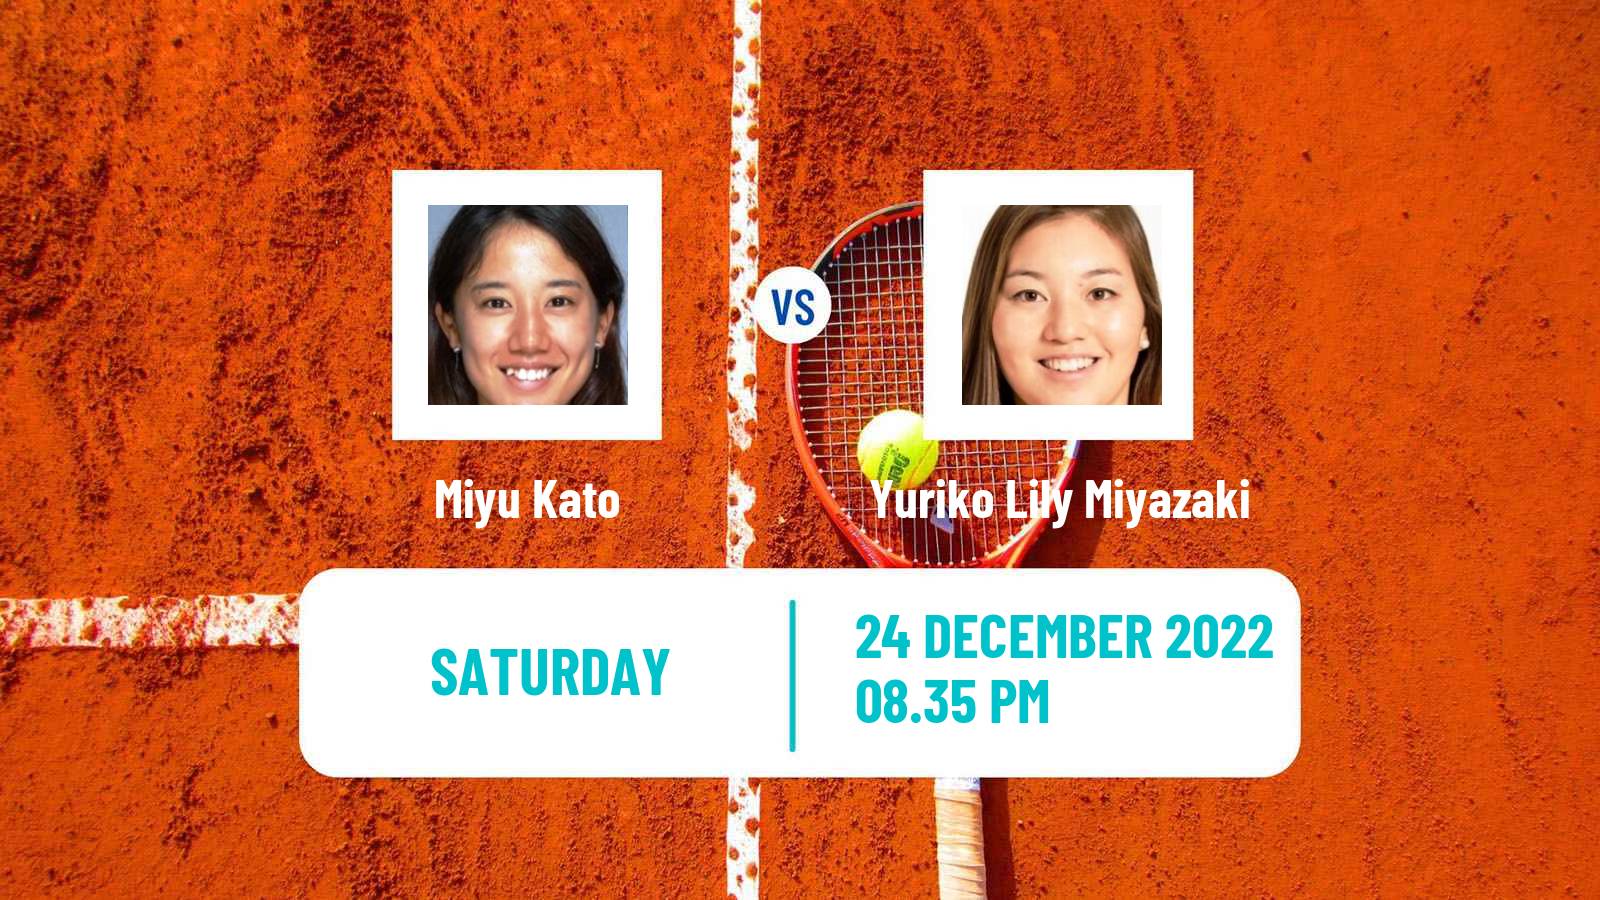 Tennis ITF Tournaments Miyu Kato - Yuriko Lily Miyazaki